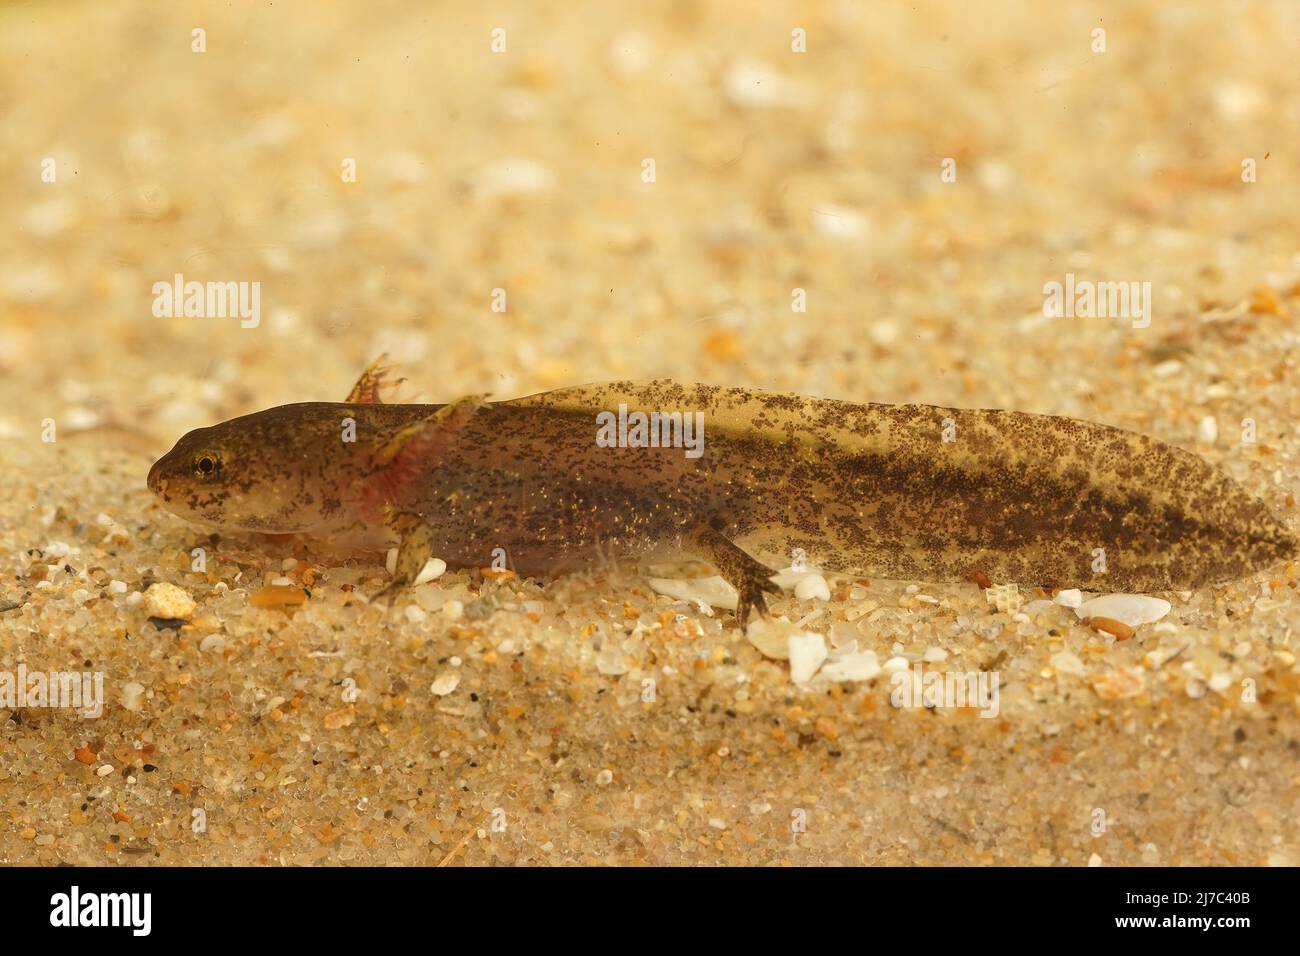 Closeup on the larvae of the Cheju salamander, Hynobius quelpaertensis underwater Stock Photo